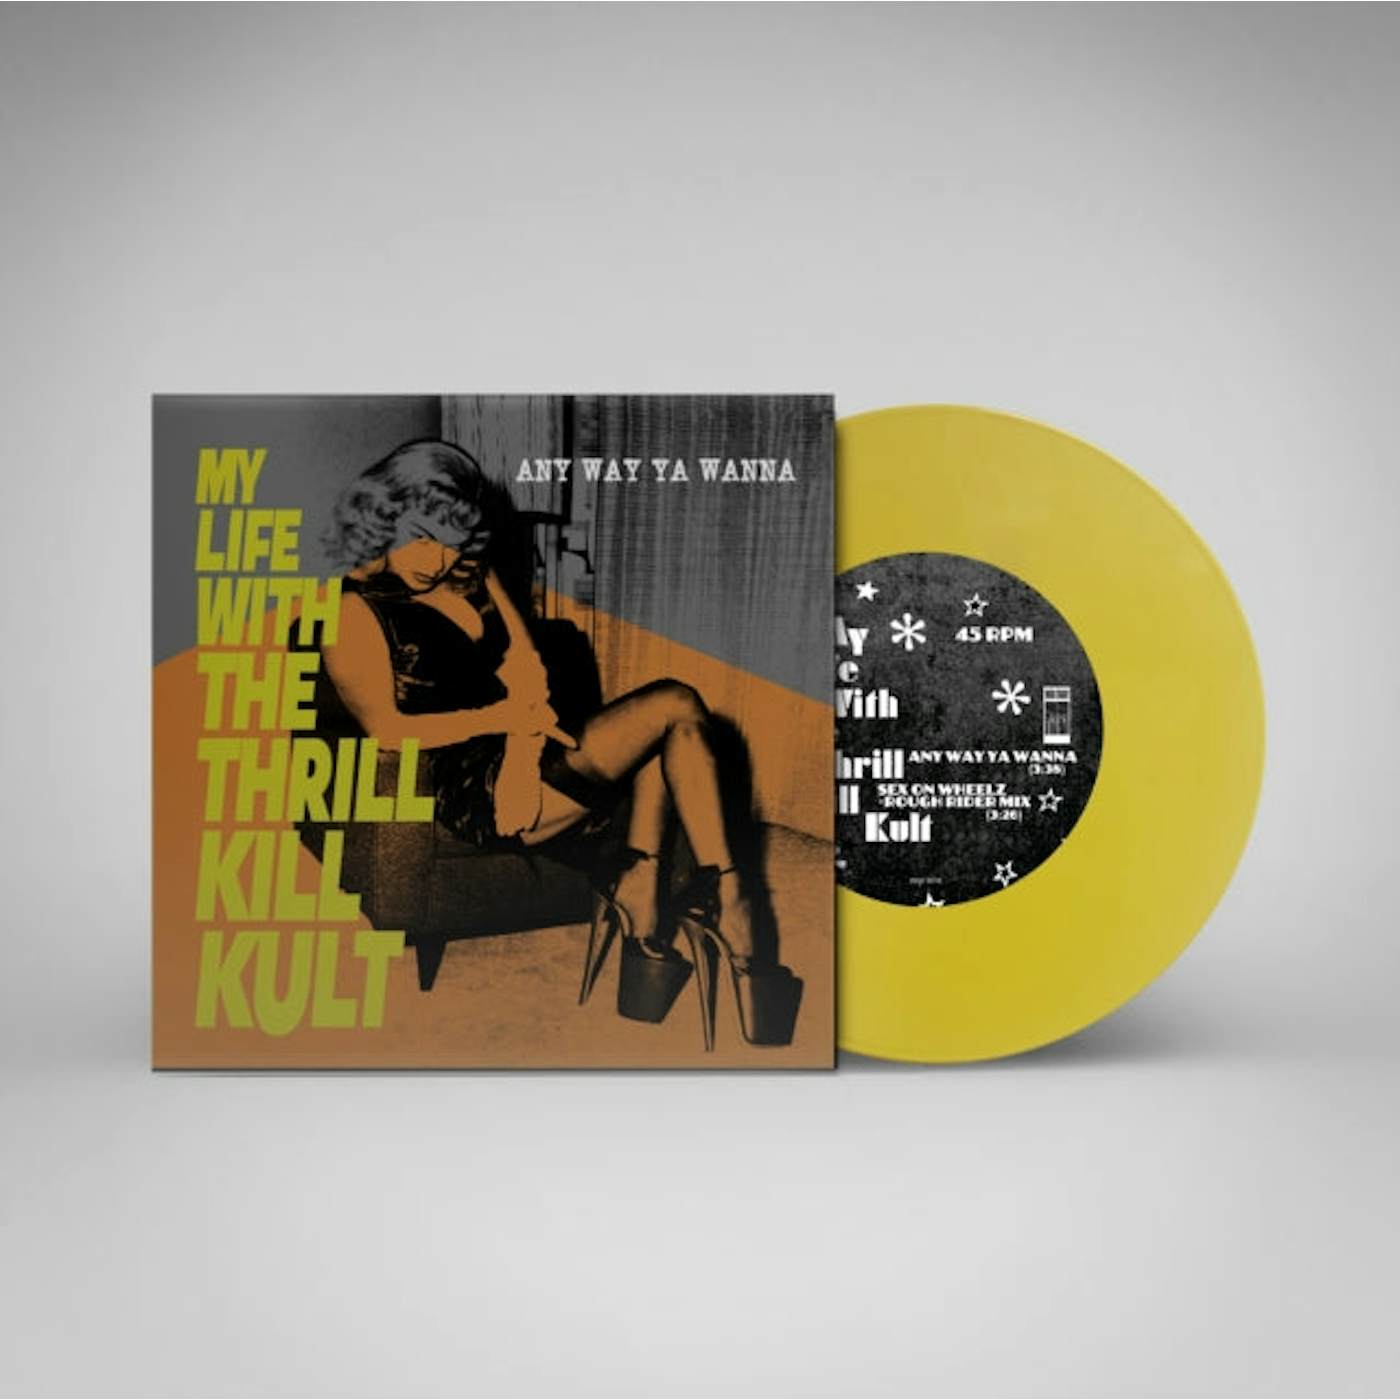 My Life With The Thrill Kill Kult LP - Any Way Ya Wanna (Yellow Vinyl)